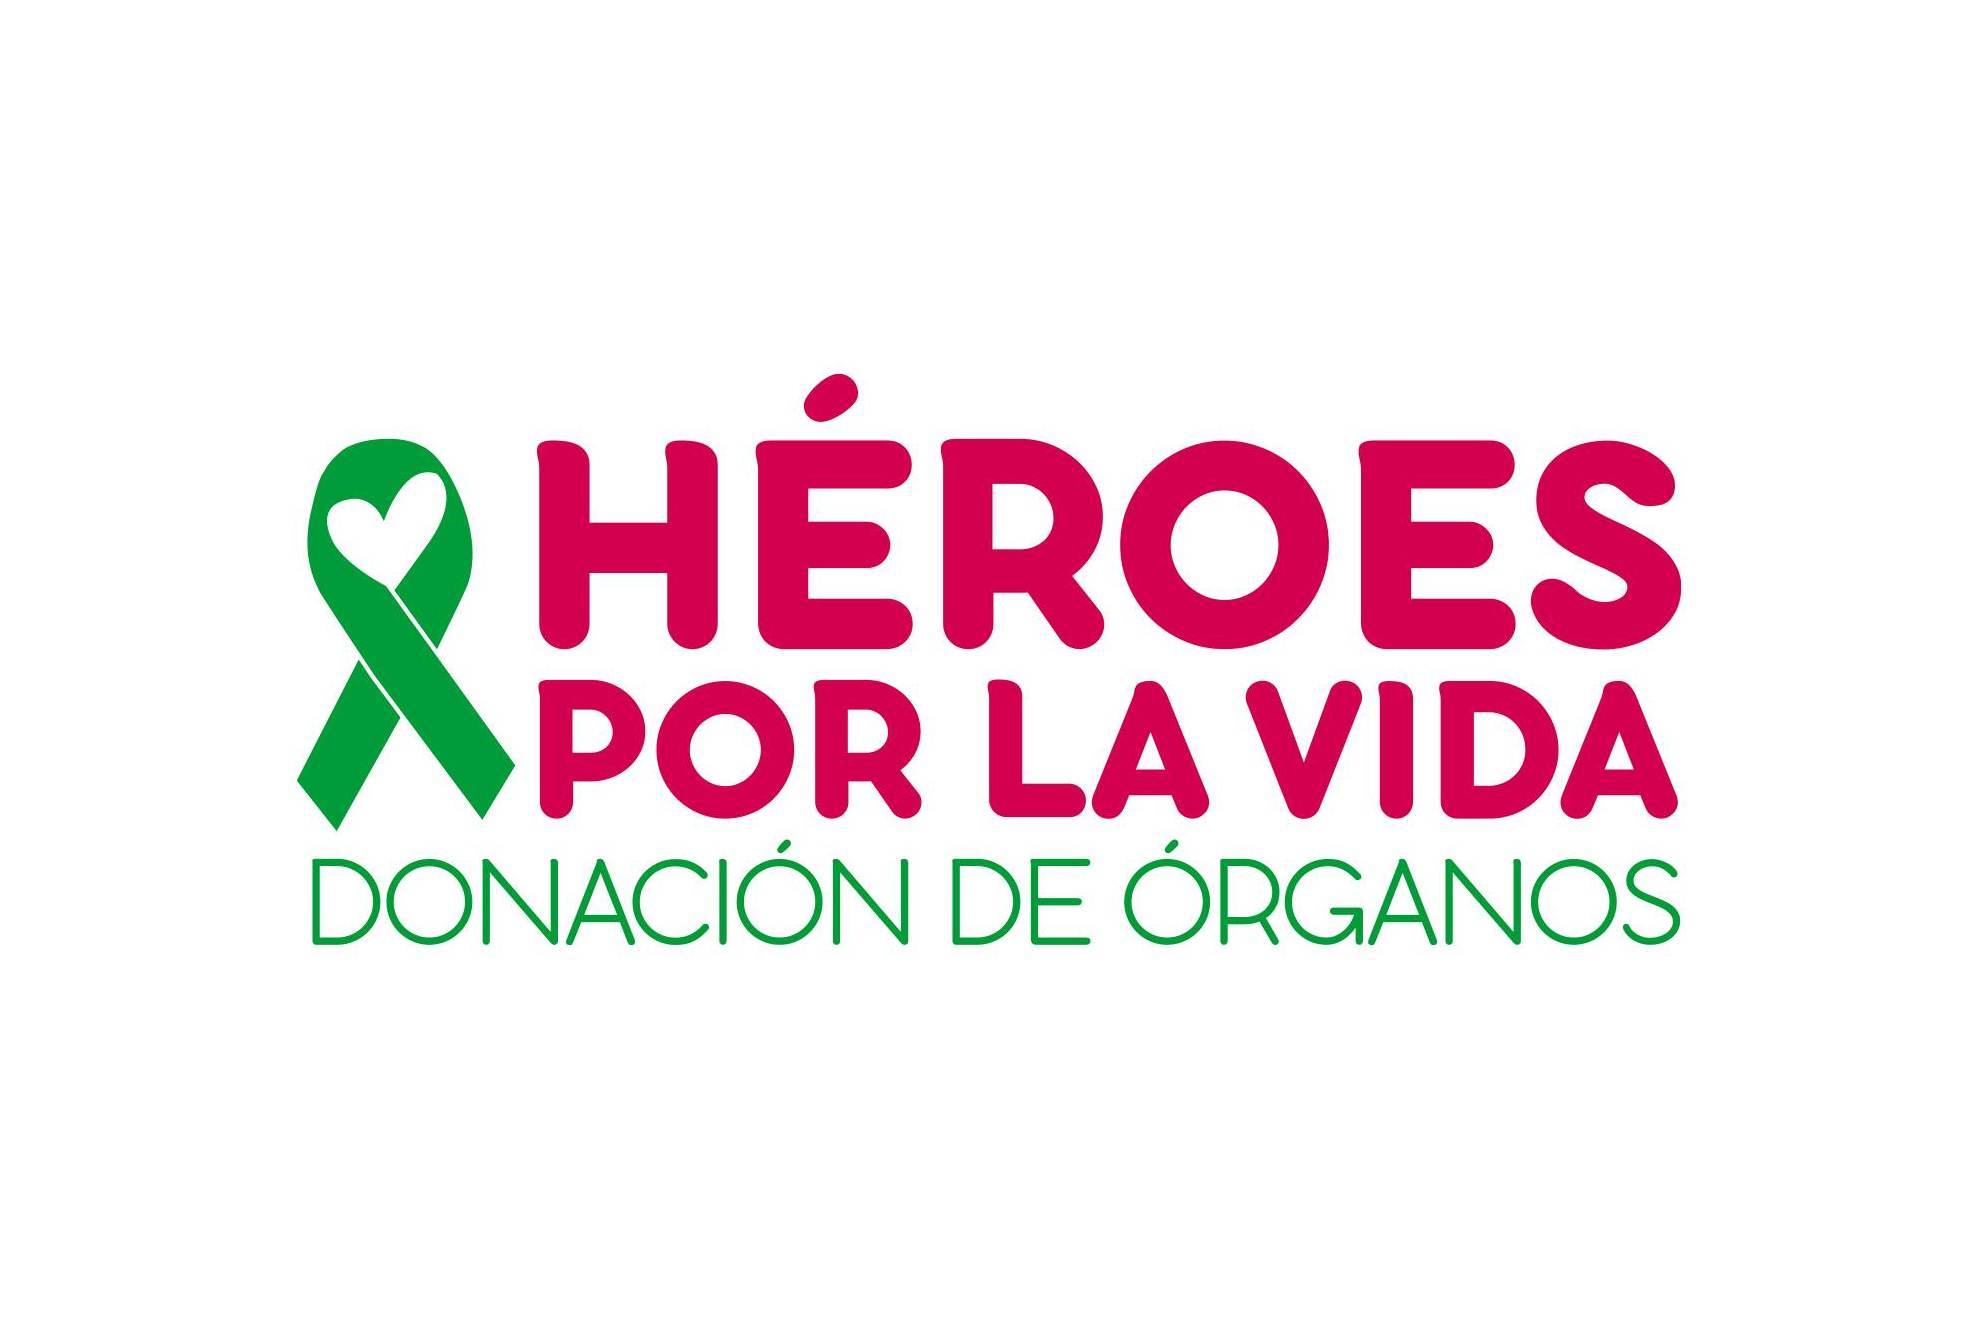 Héroes por la vida: La campaña de Fundación Carlos Slim para promover la donación de órganos